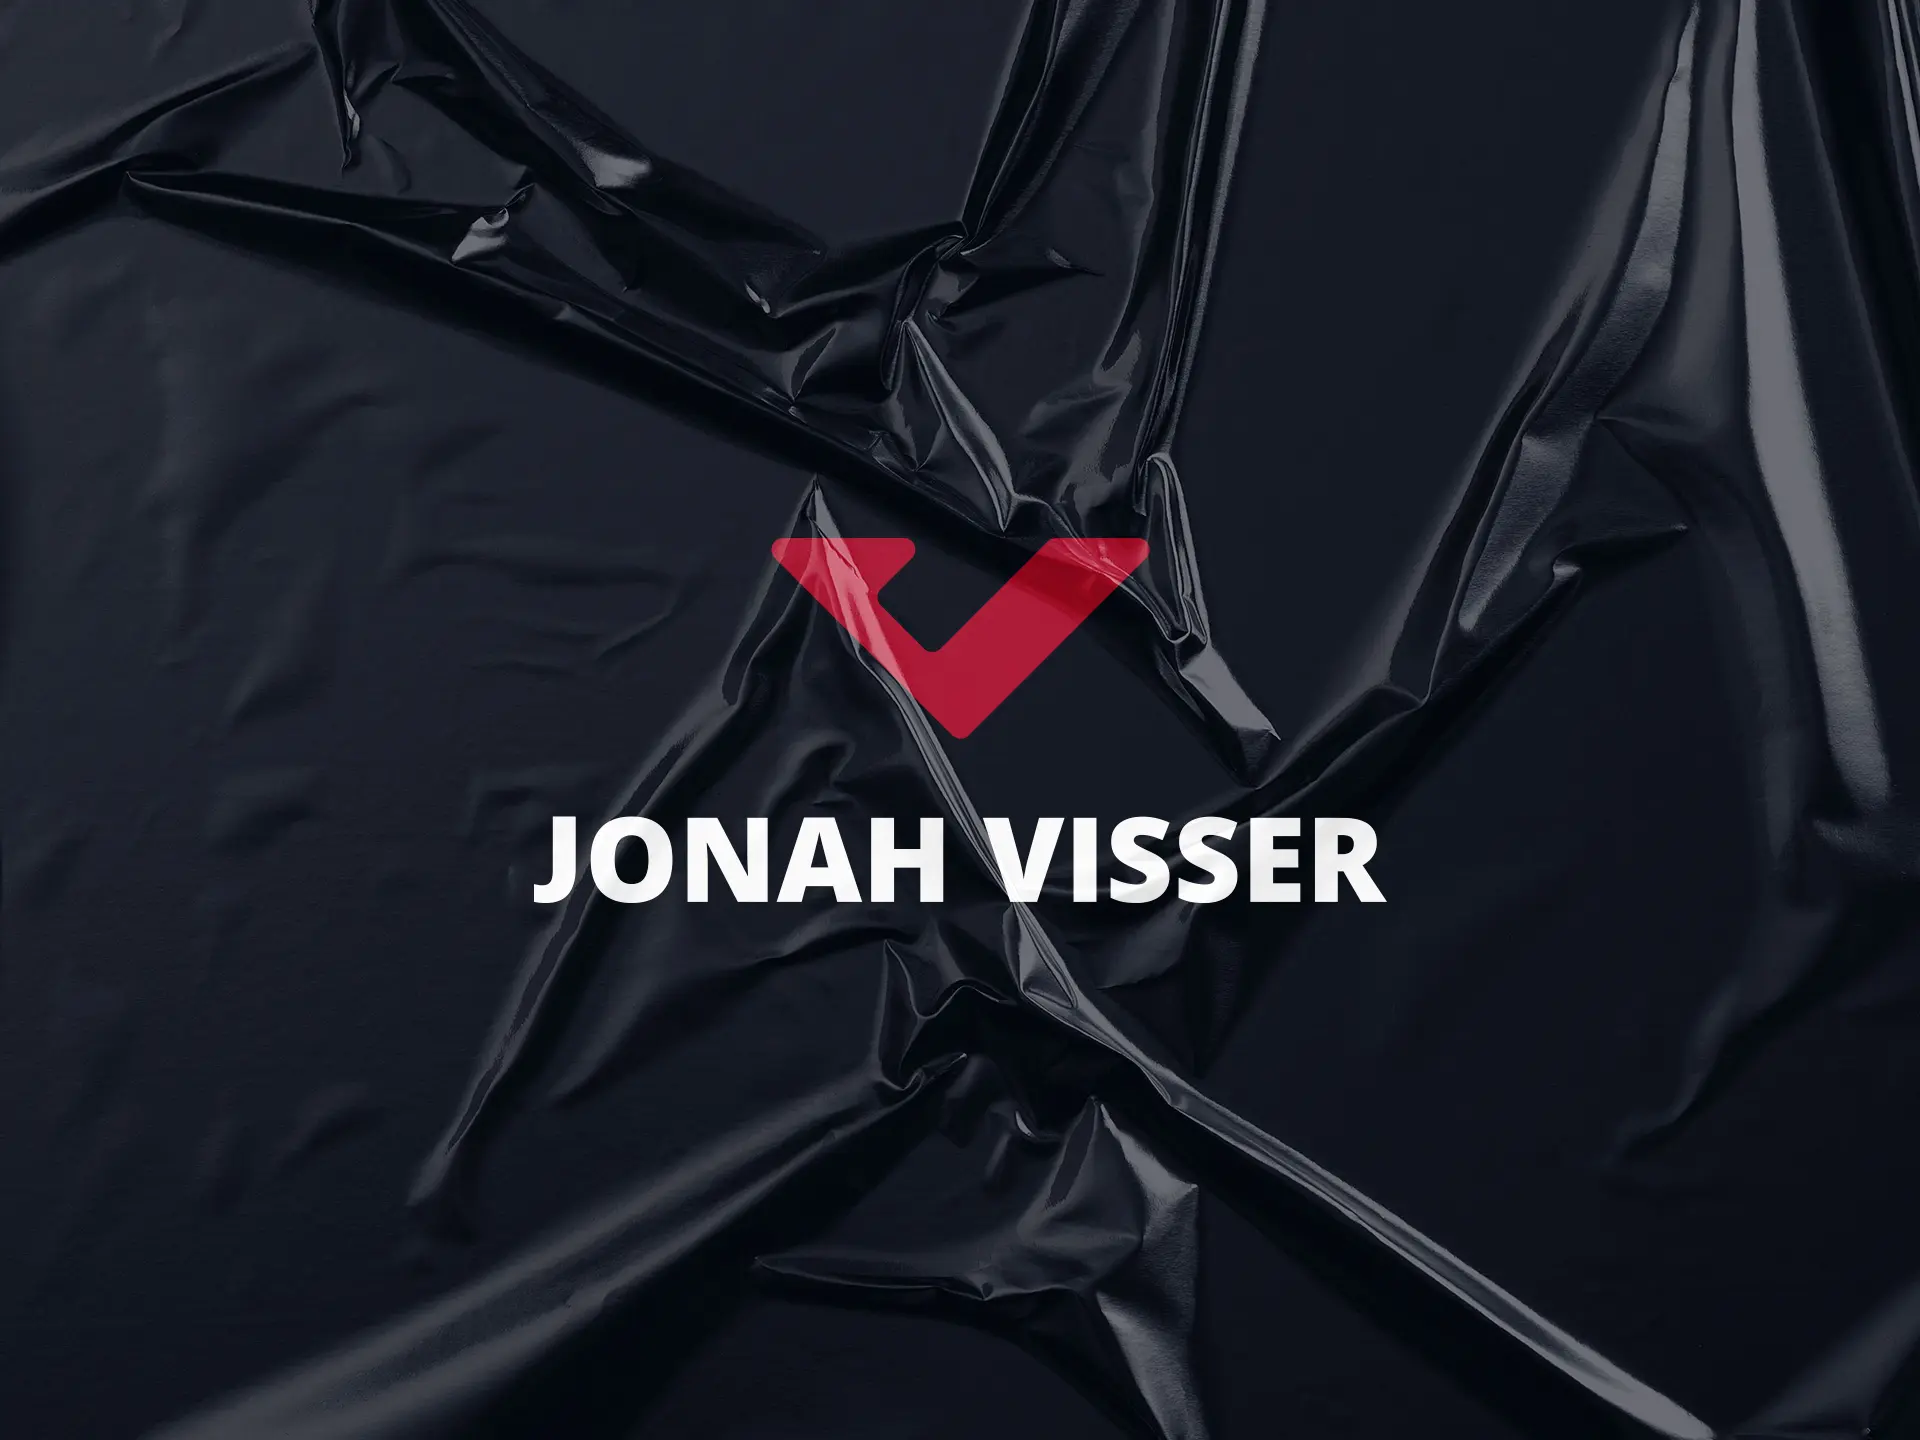 Jonah Visser´s under a wrinkled plastic on a black background.